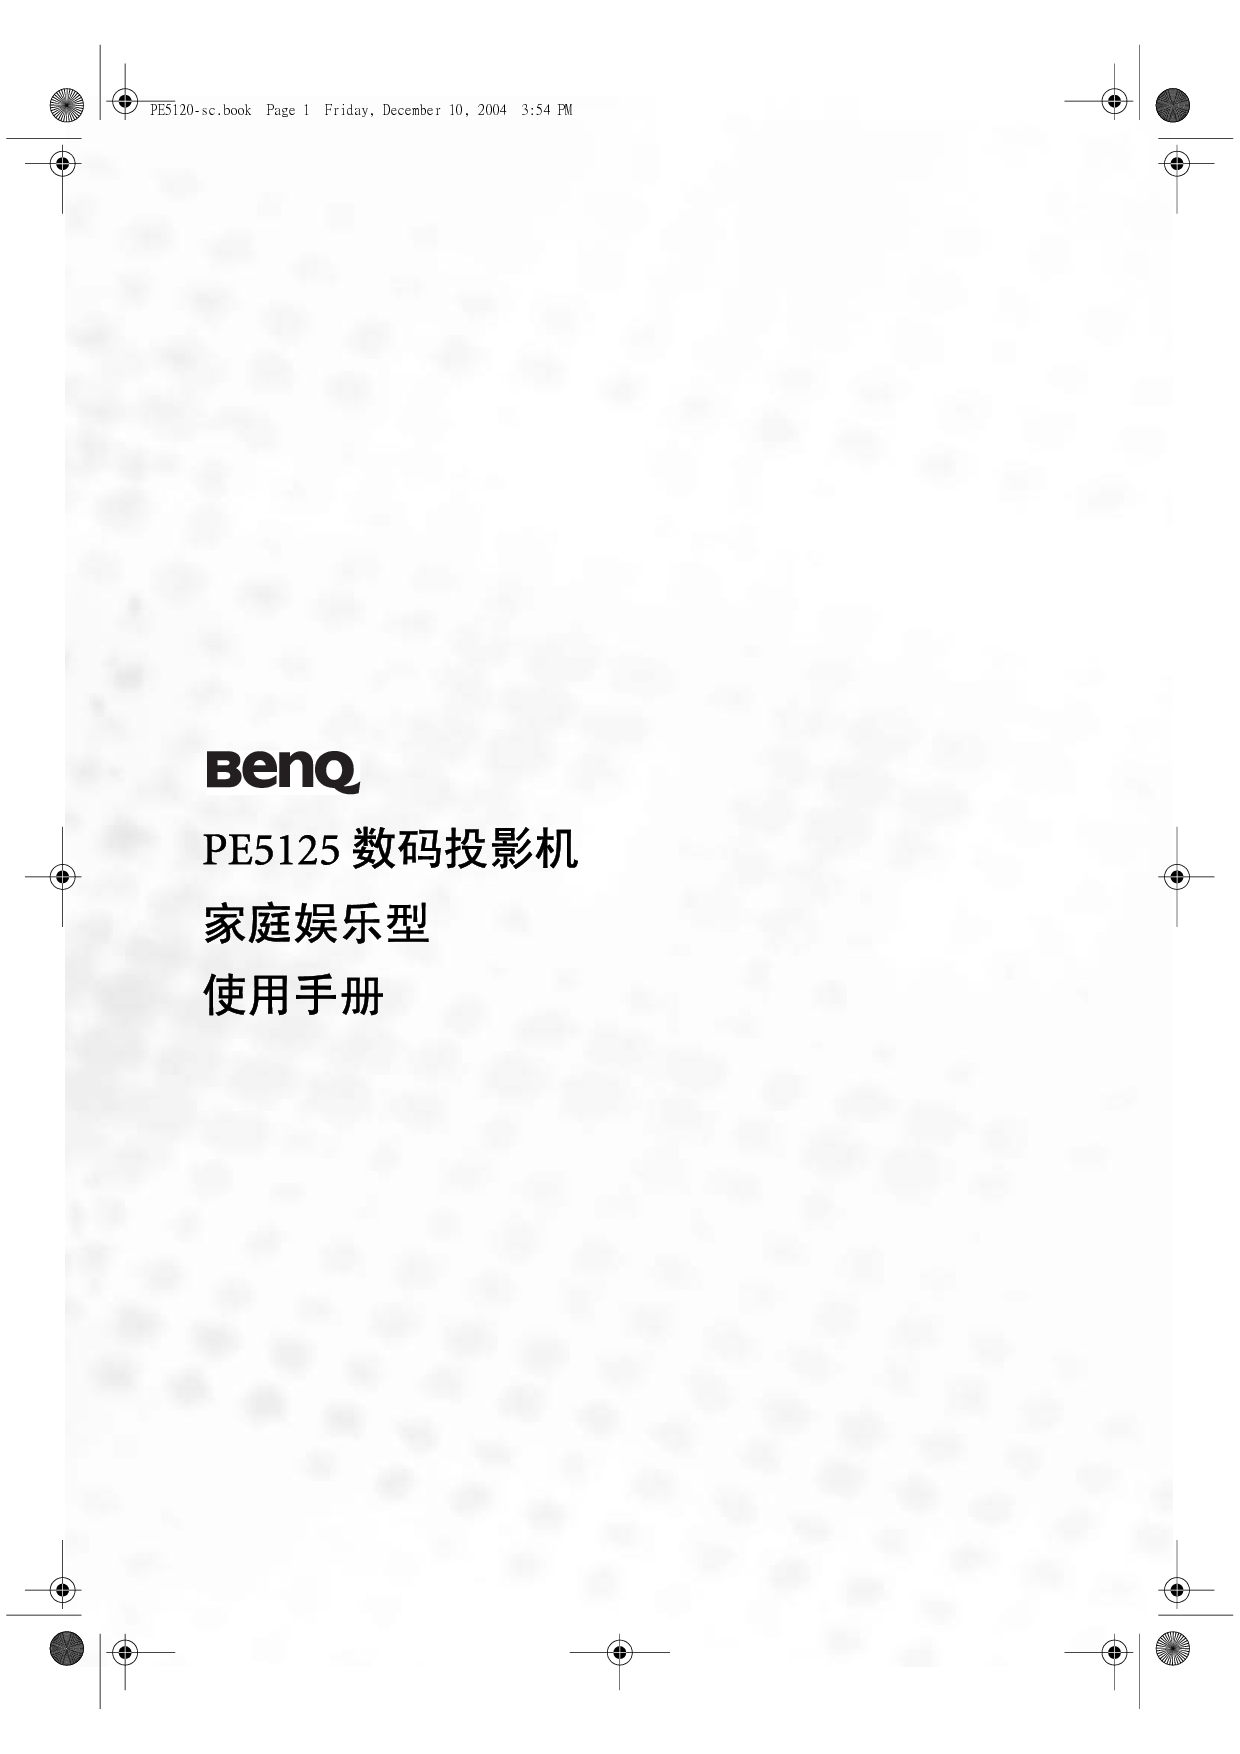 明基 Benq PE5125 使用手册 封面